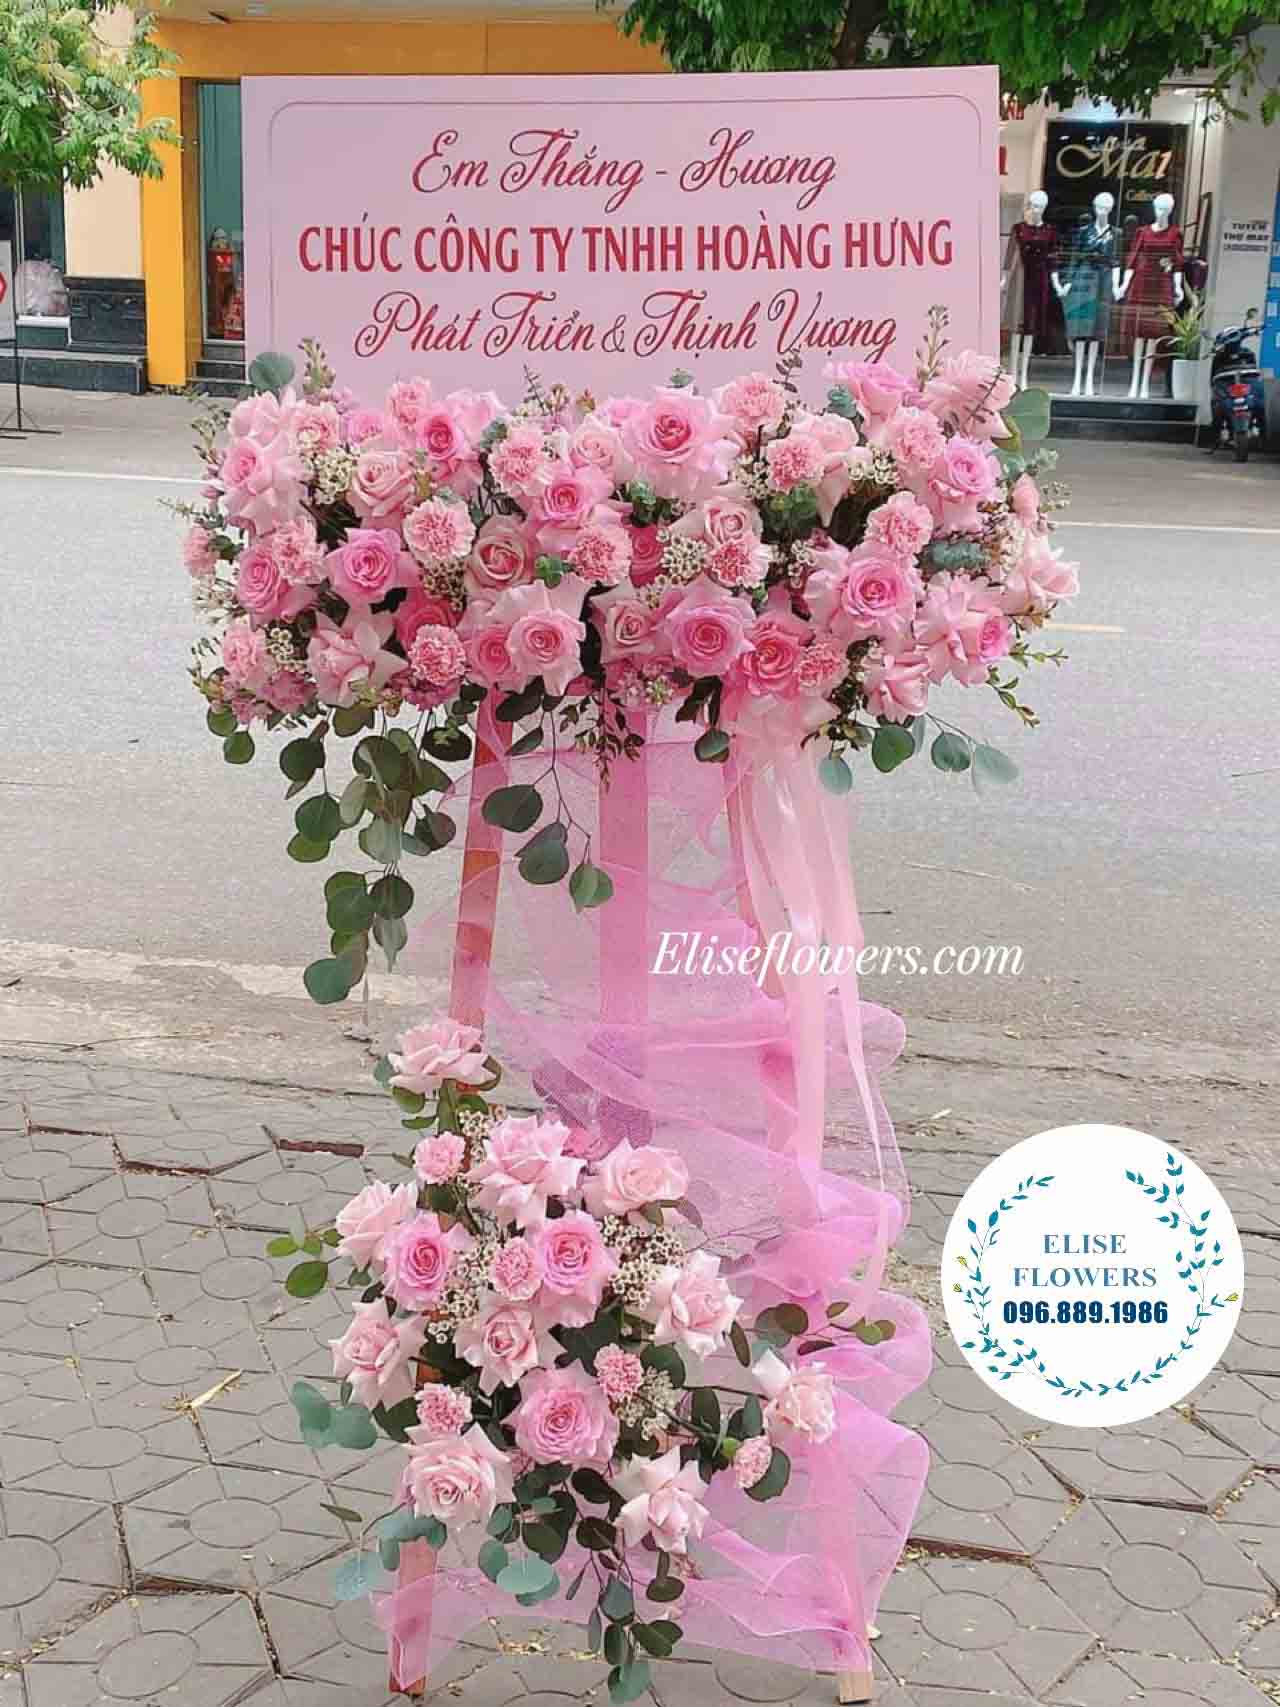 HOA KHAI TRƯƠNG HÀ NỘI | Kệ hoa tone hồng sang trọng chúc mừng khai trương | Điện hoa khai trương ở Cầu Giấy - Hà Nội